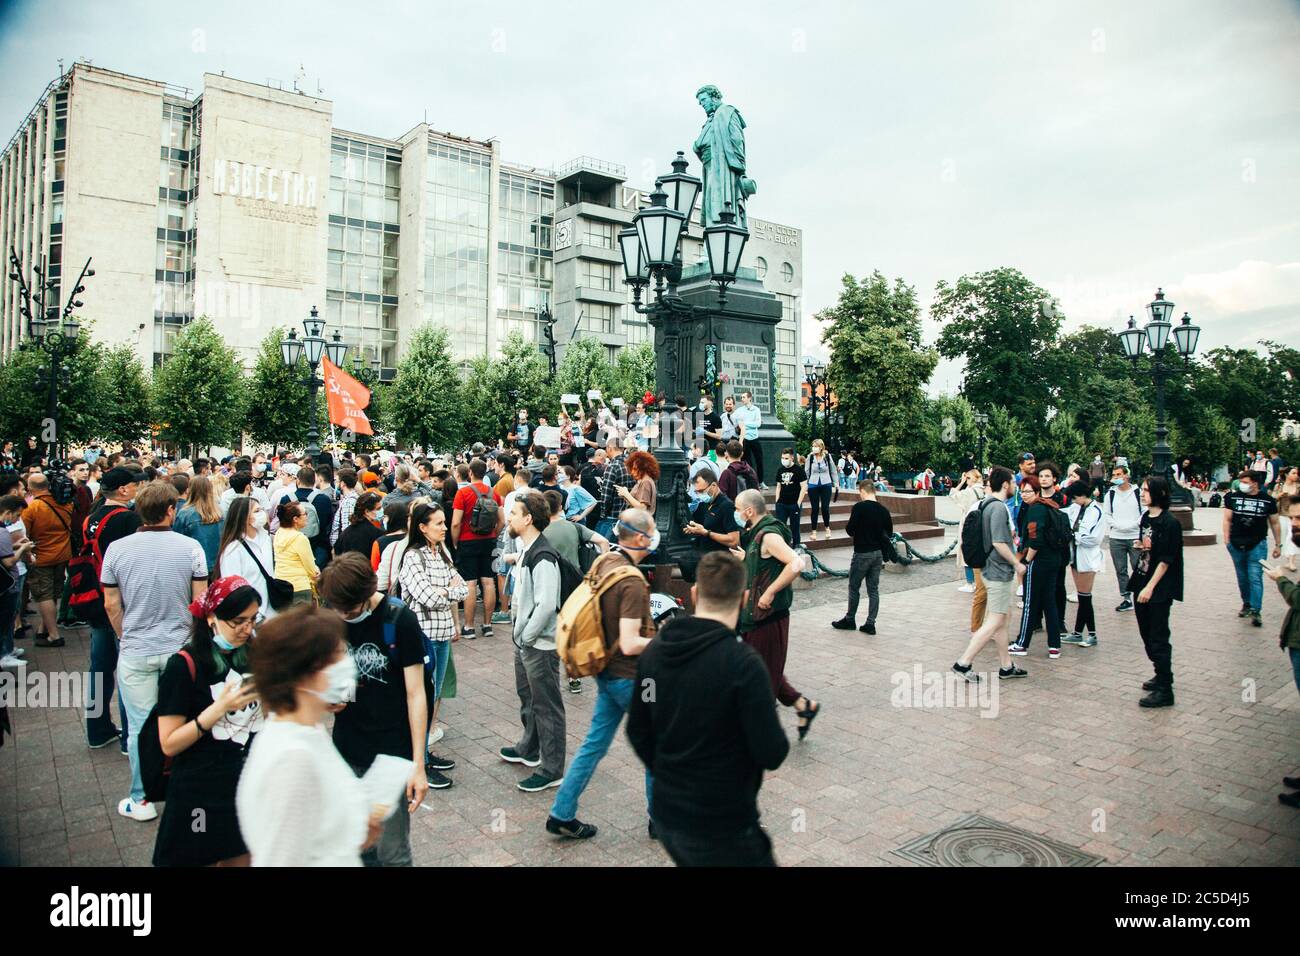 Moskau-Stadt, Russland - 1. Juli 2020: Protest gegen Verfassungsänderung in der Innenstadt von Moskau. Die Menschen protestieren gegen das Putins-Regime Stockfoto